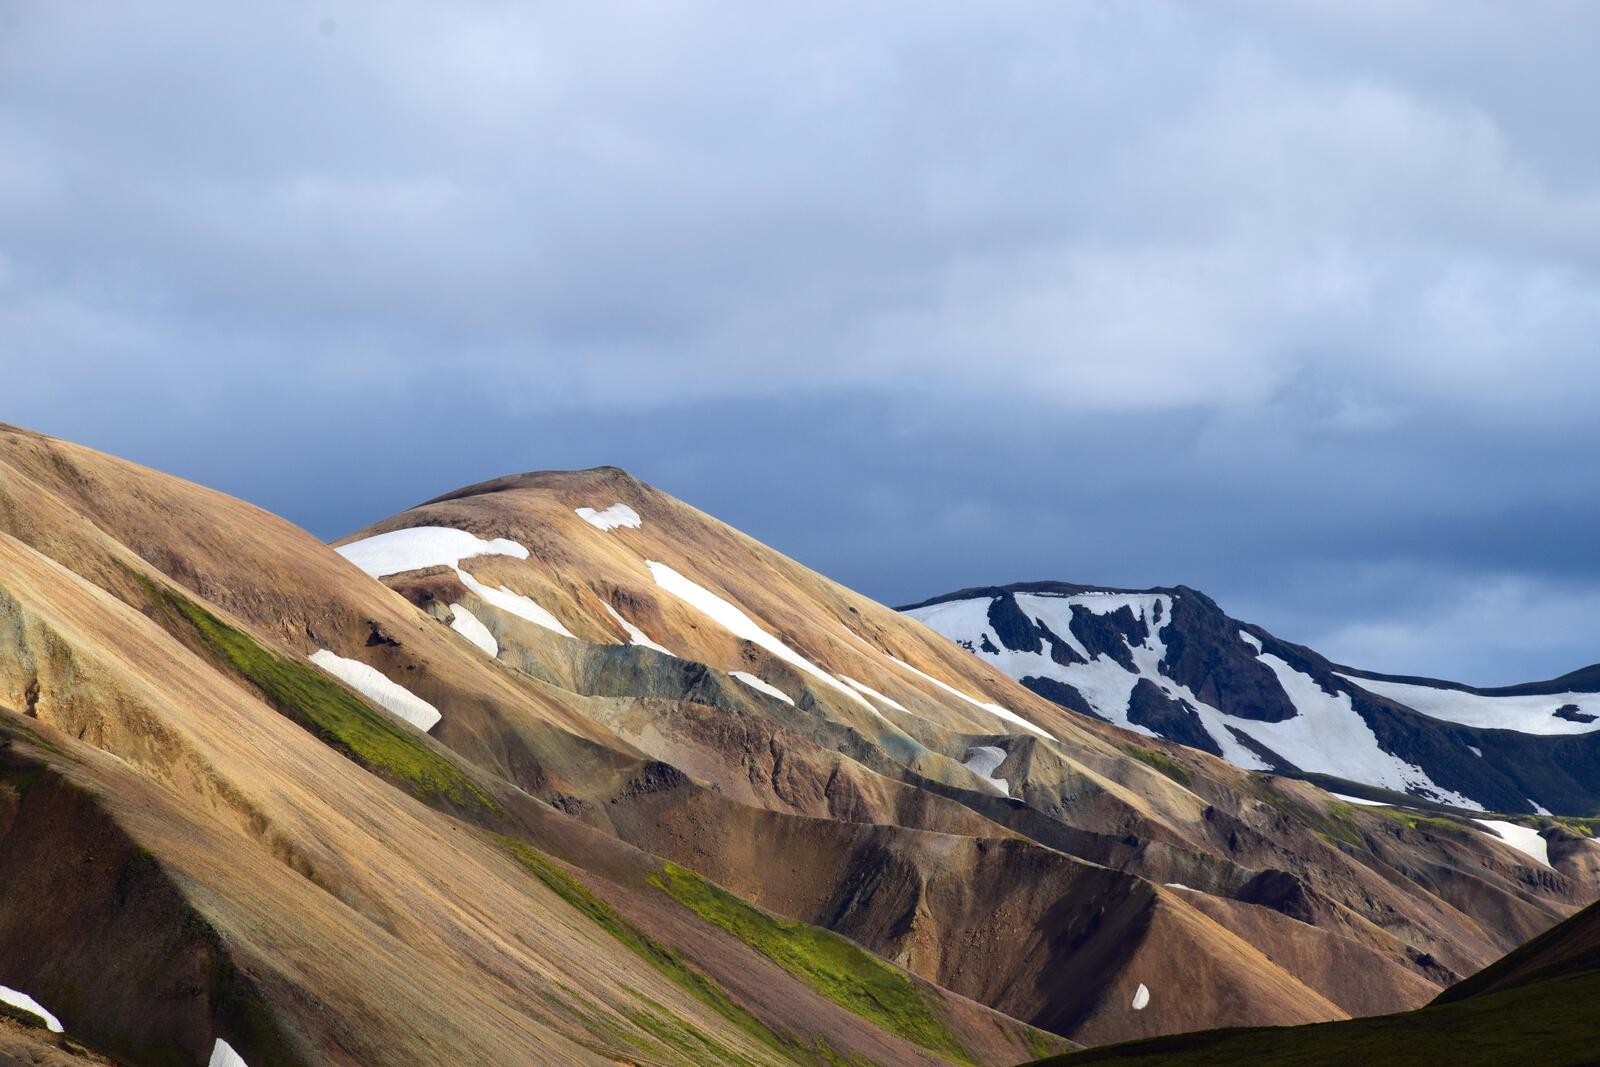 Бесплатное фото Горный рельеф со снегом на вершинах